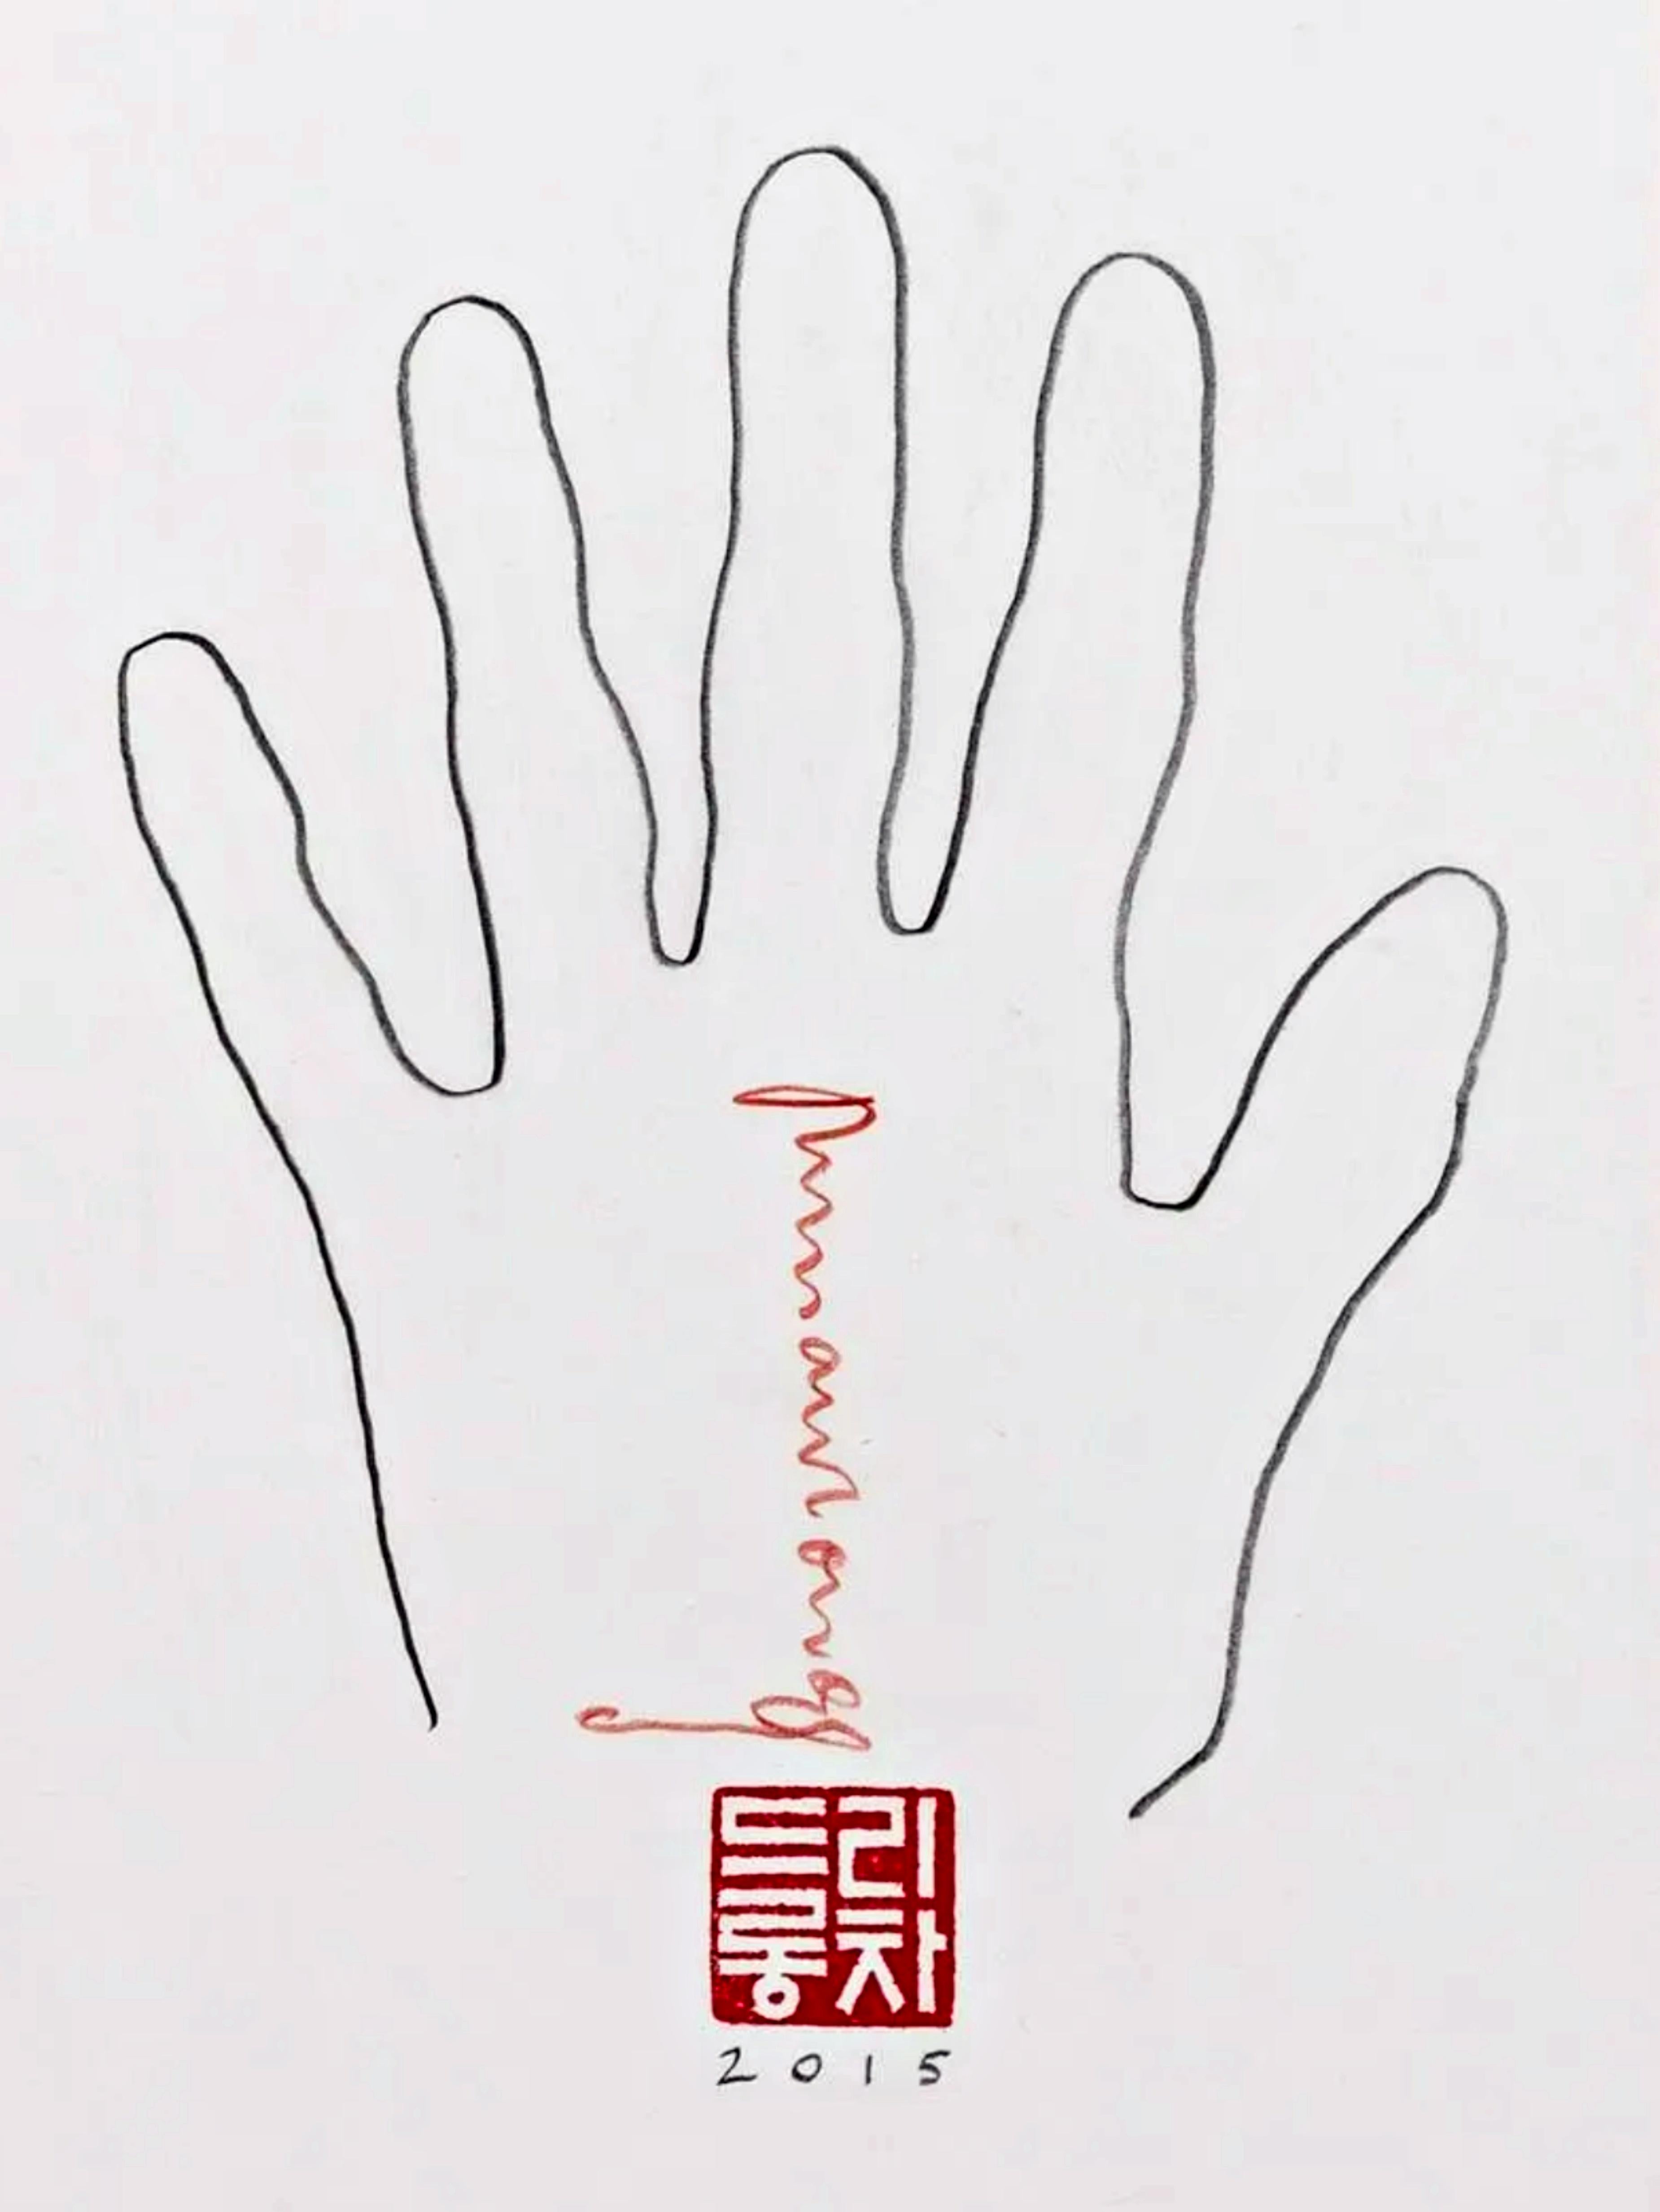 RICHARD LONG
Sans titre (main de l'artiste), 2015
Crayon graphite sur papier avec encre rouge et monogramme
Signée à la main à l'encre rouge, datée au crayon, estampillée du monogramme de l'artiste.
Unique en son genre
Dessin original, signé à la